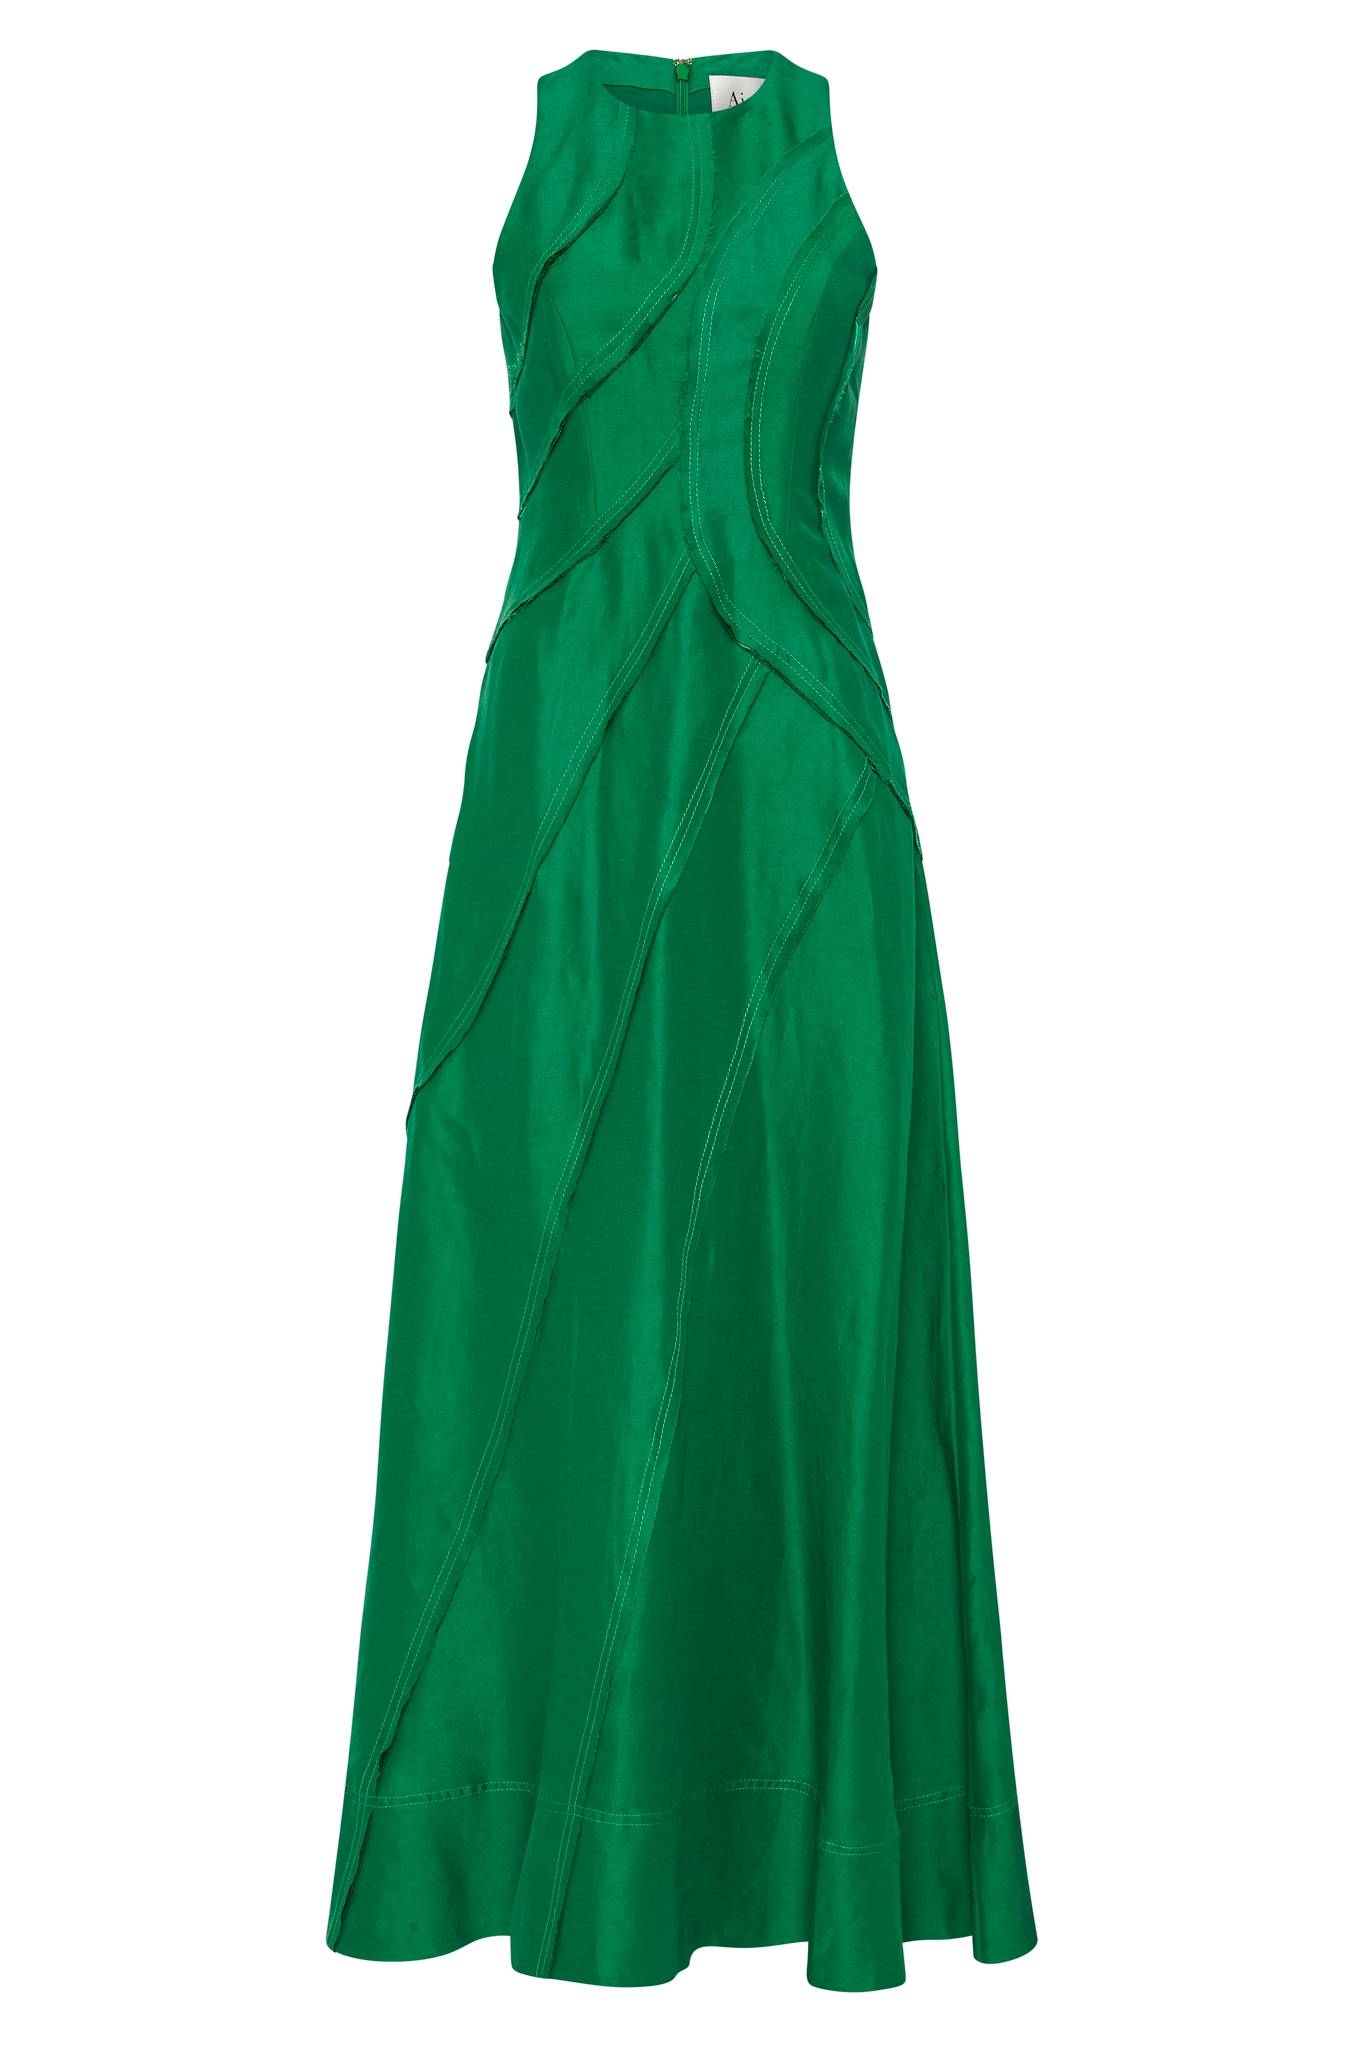 Emerald green midi dress